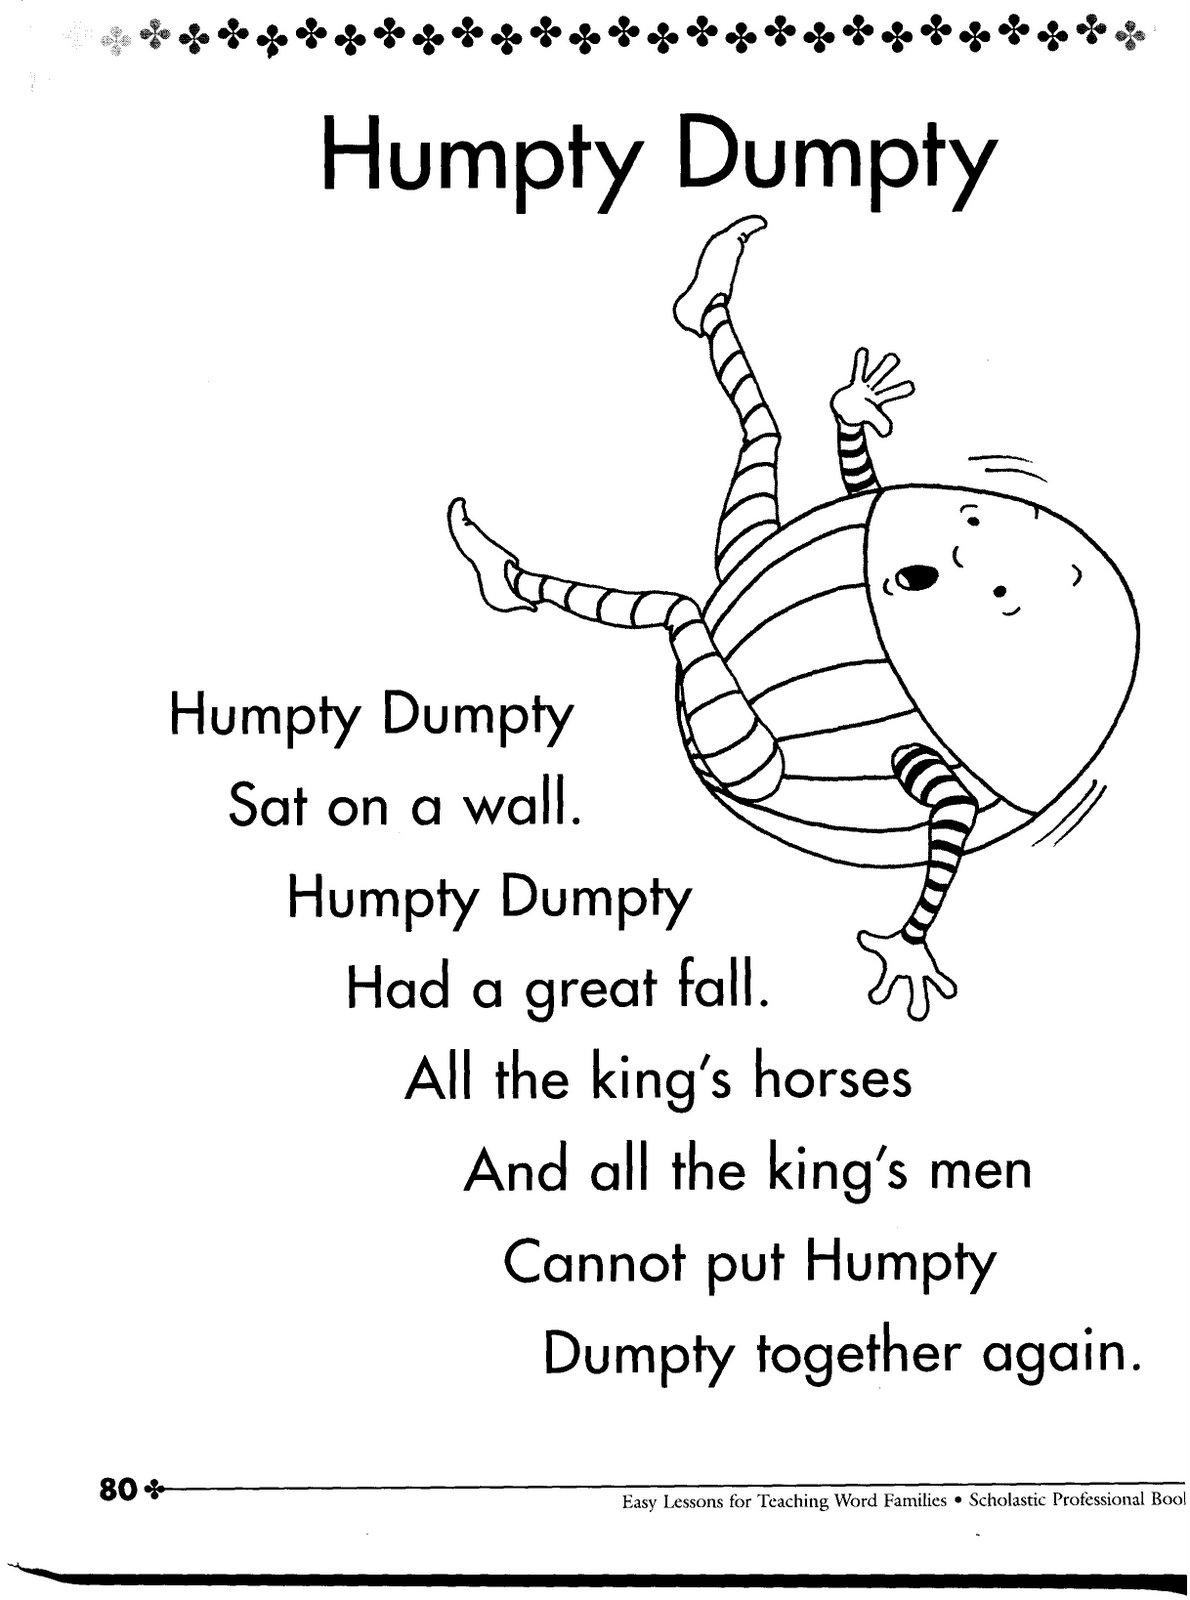 [humpty+dumpty.jpg]